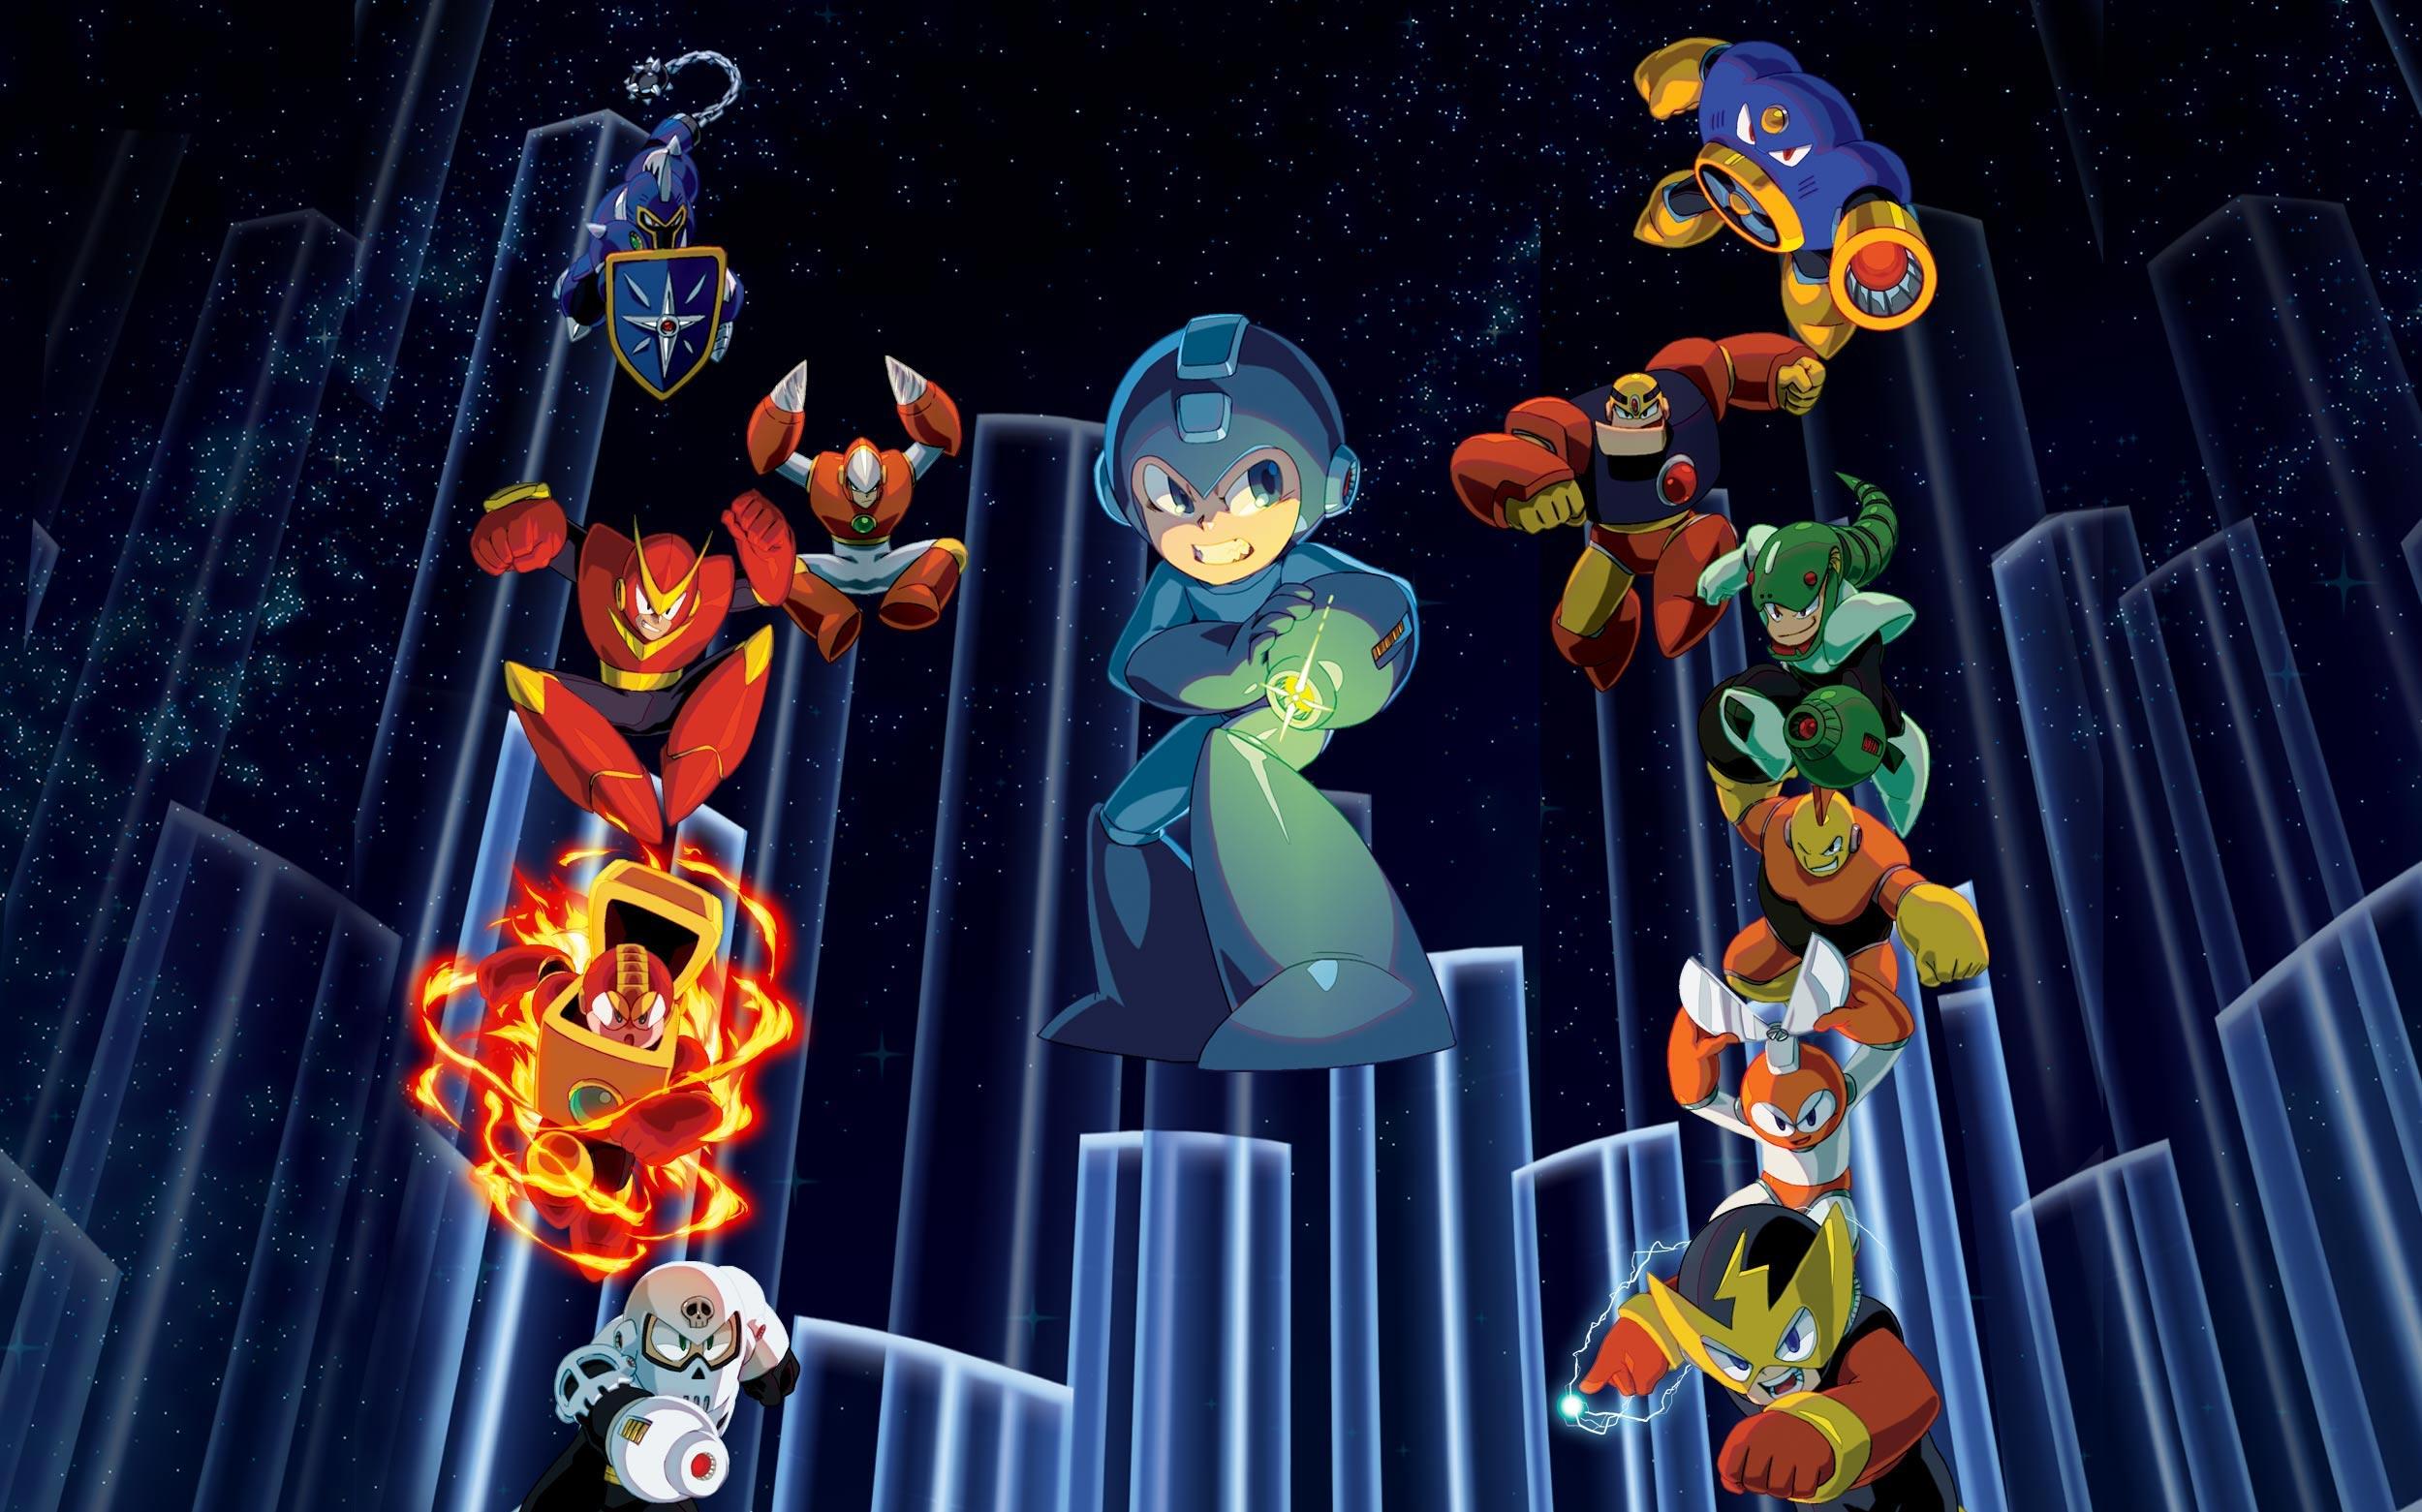 Ranking the core Mega Man games